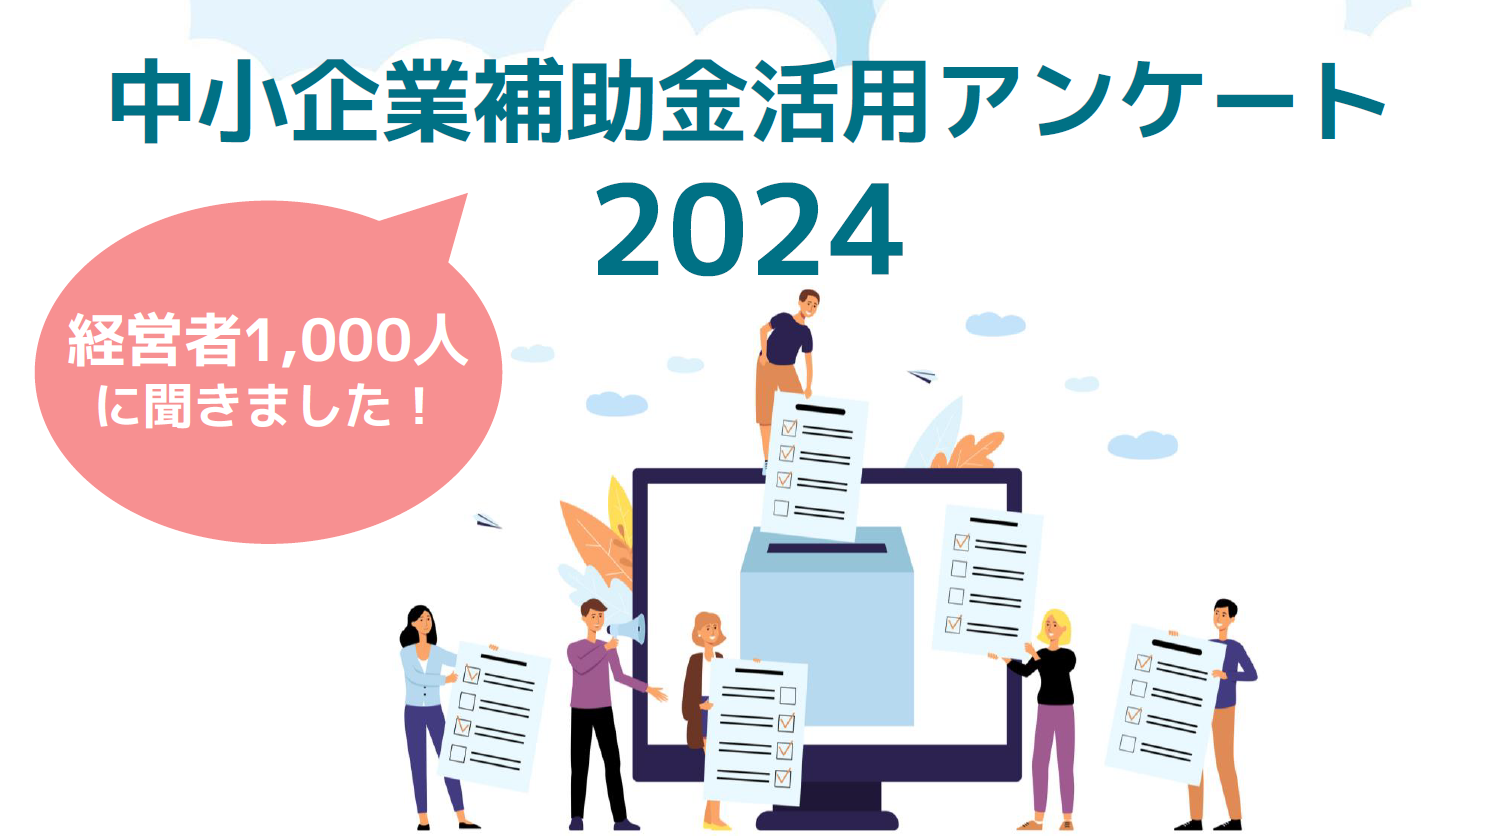 【2024年】中小企業補助金活用アンケート結果のイメージ